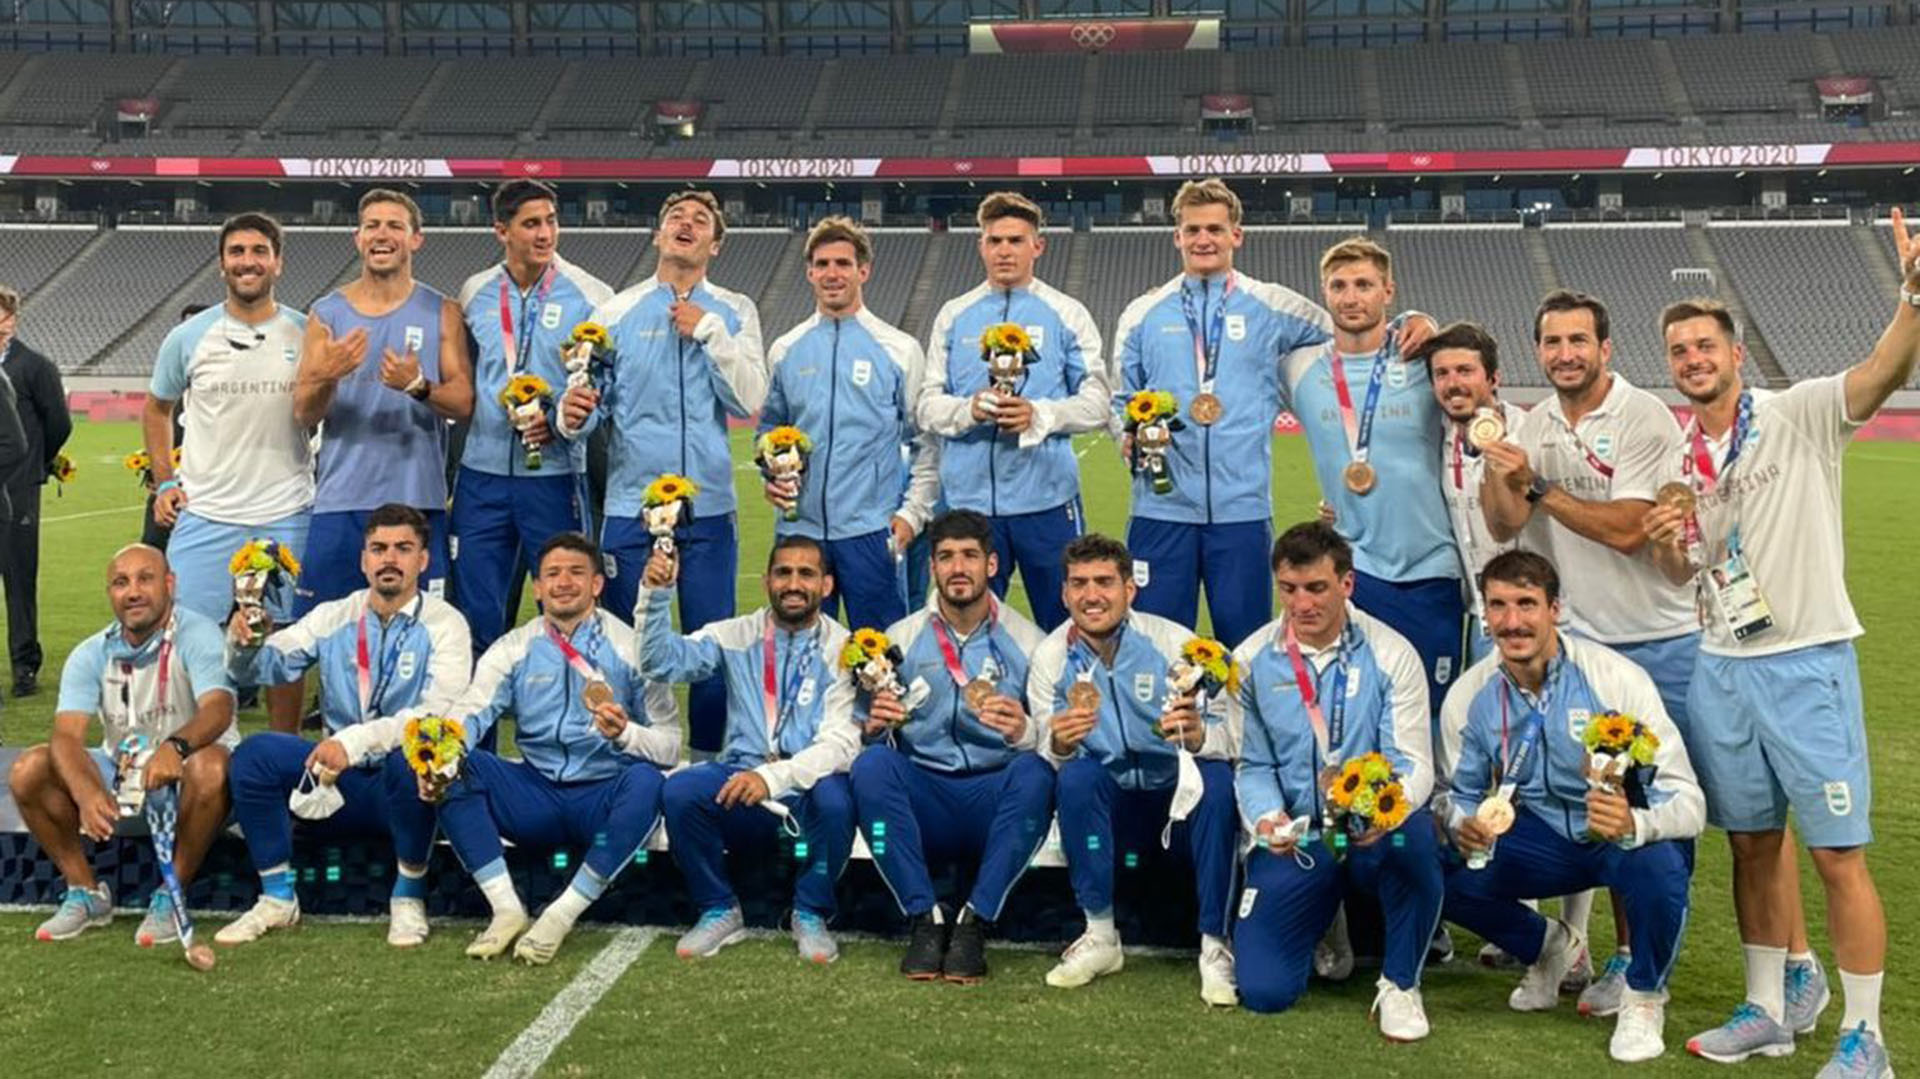 Los Pumas 7 retornaron al país tras conquistar la medalla de bronce en Tokio: “Sin sacrificios no hay logros”